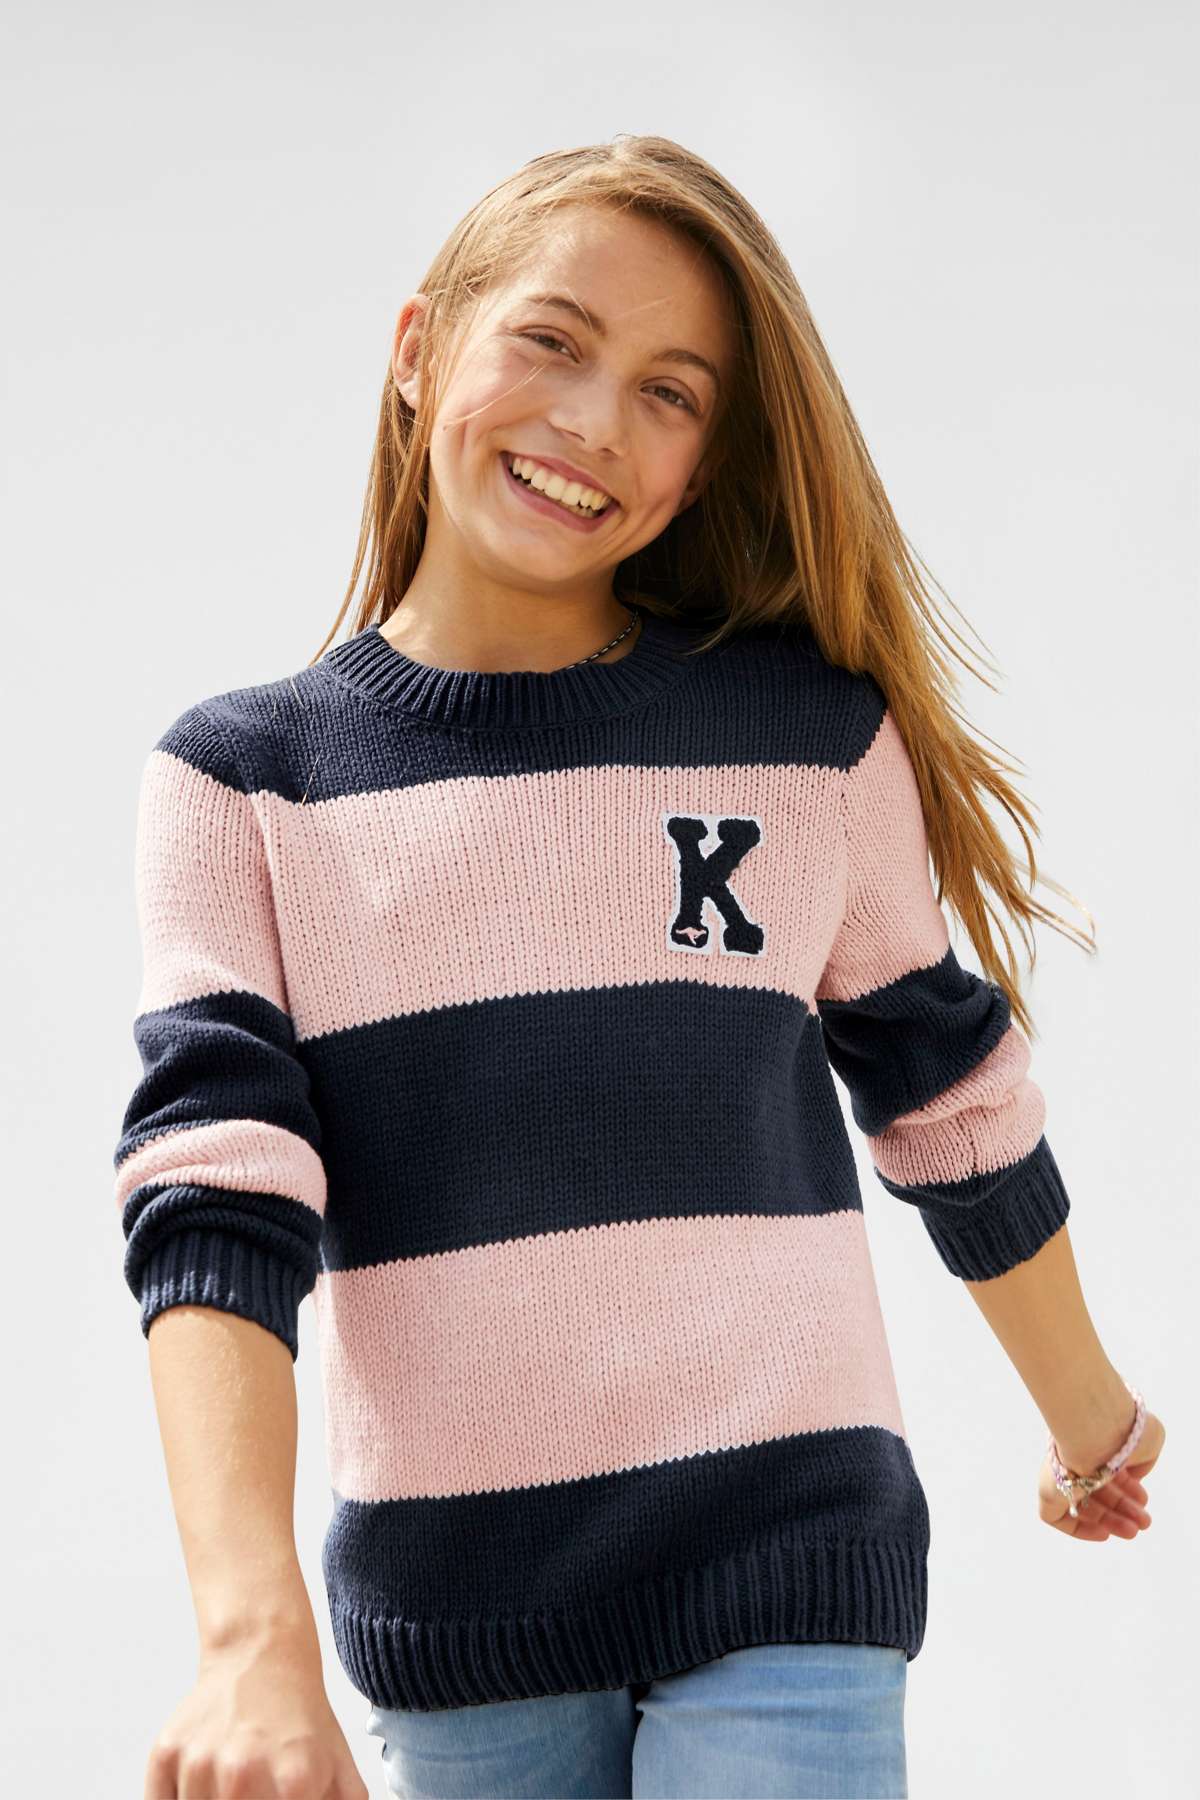 Вязаный свитер в модном образе в полоску.